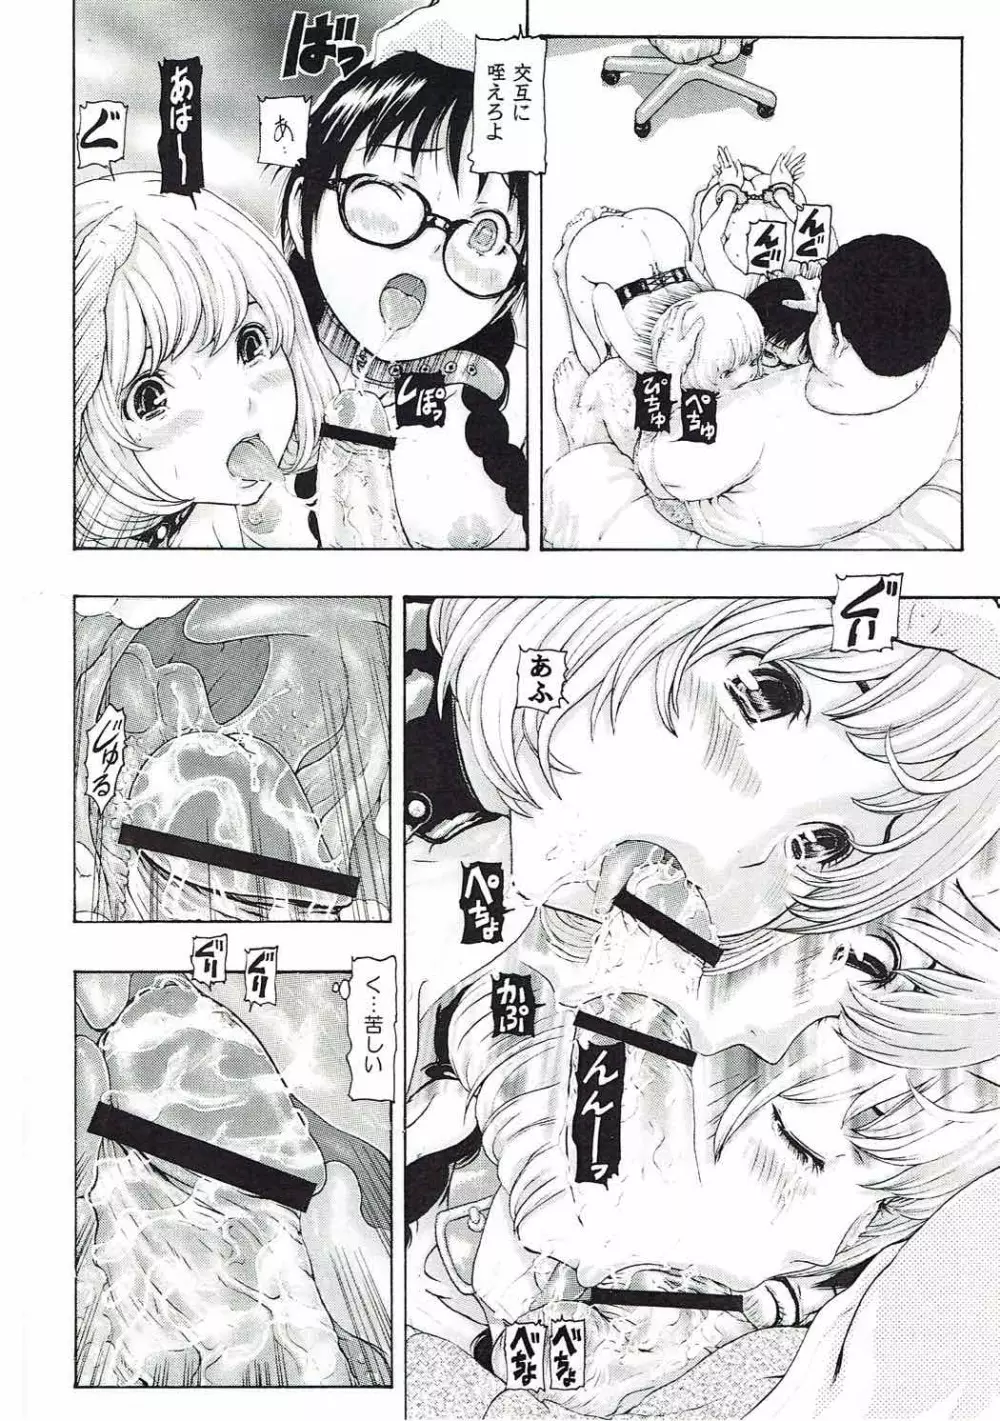 [け゜ぴけ゜ぴ (ぬャカな)] MANKOKU漫画家(とアシスタント)残酷物語 (バクマン。) - page11